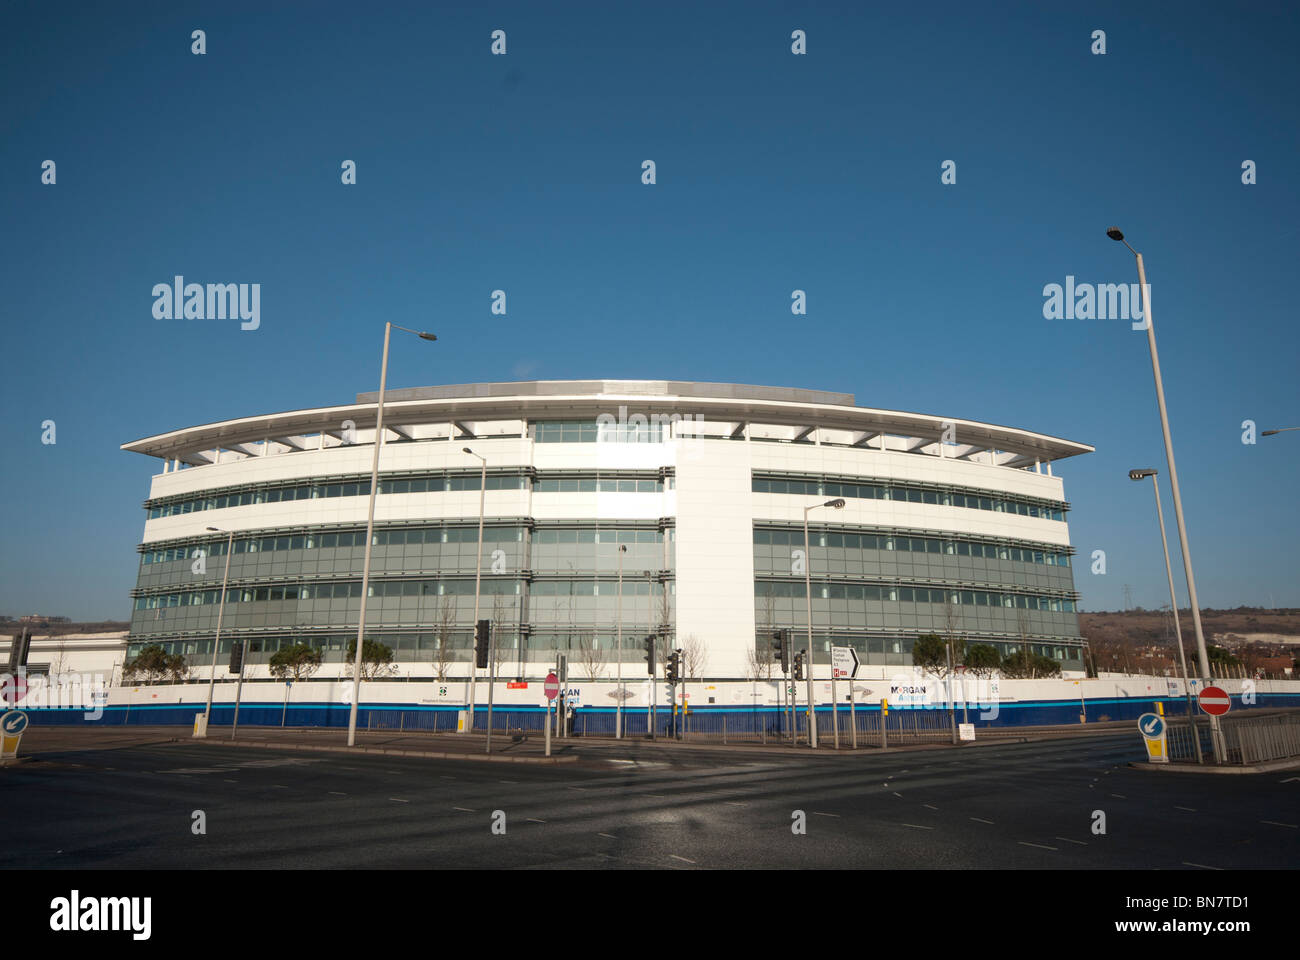 El exterior del edificio de oficinas en la Marina Ray Cosham, Portsmouth Foto de stock